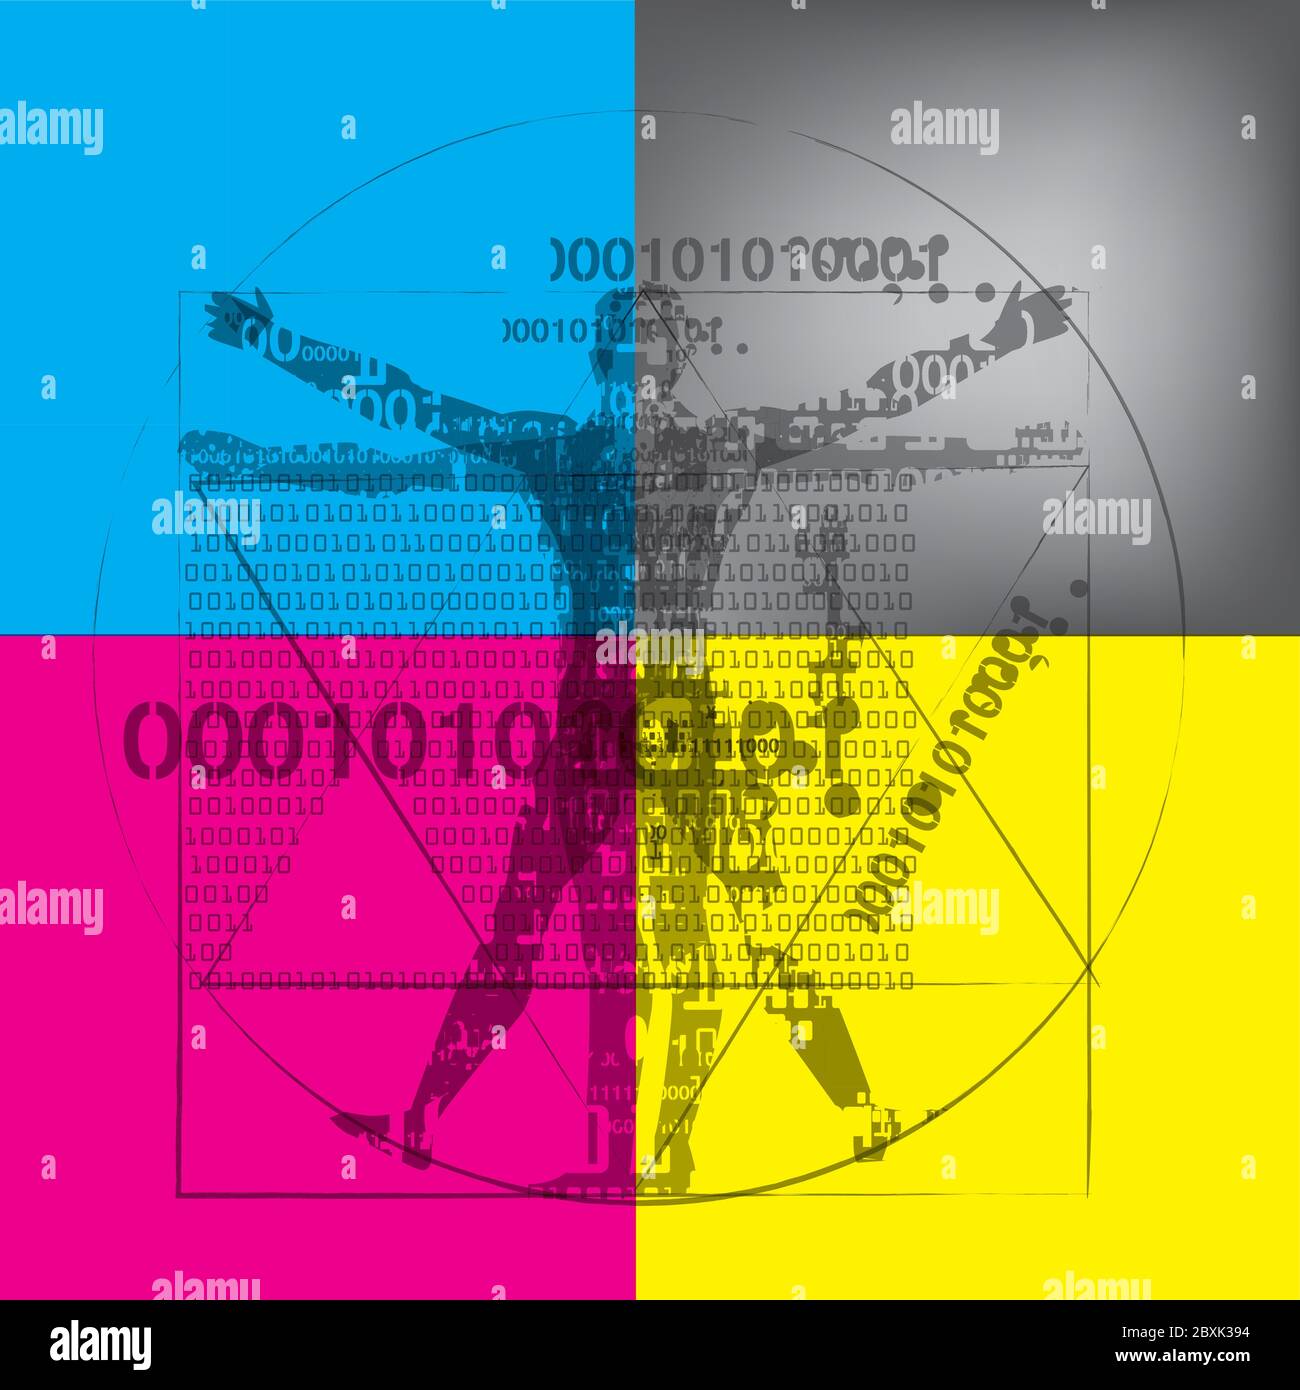 Uomo itruviano con codici binari su sfondo colori CMYK. Illustrazione espressiva futuristica dell'uomo vitruviano con codici binari. Illustrazione Vettoriale